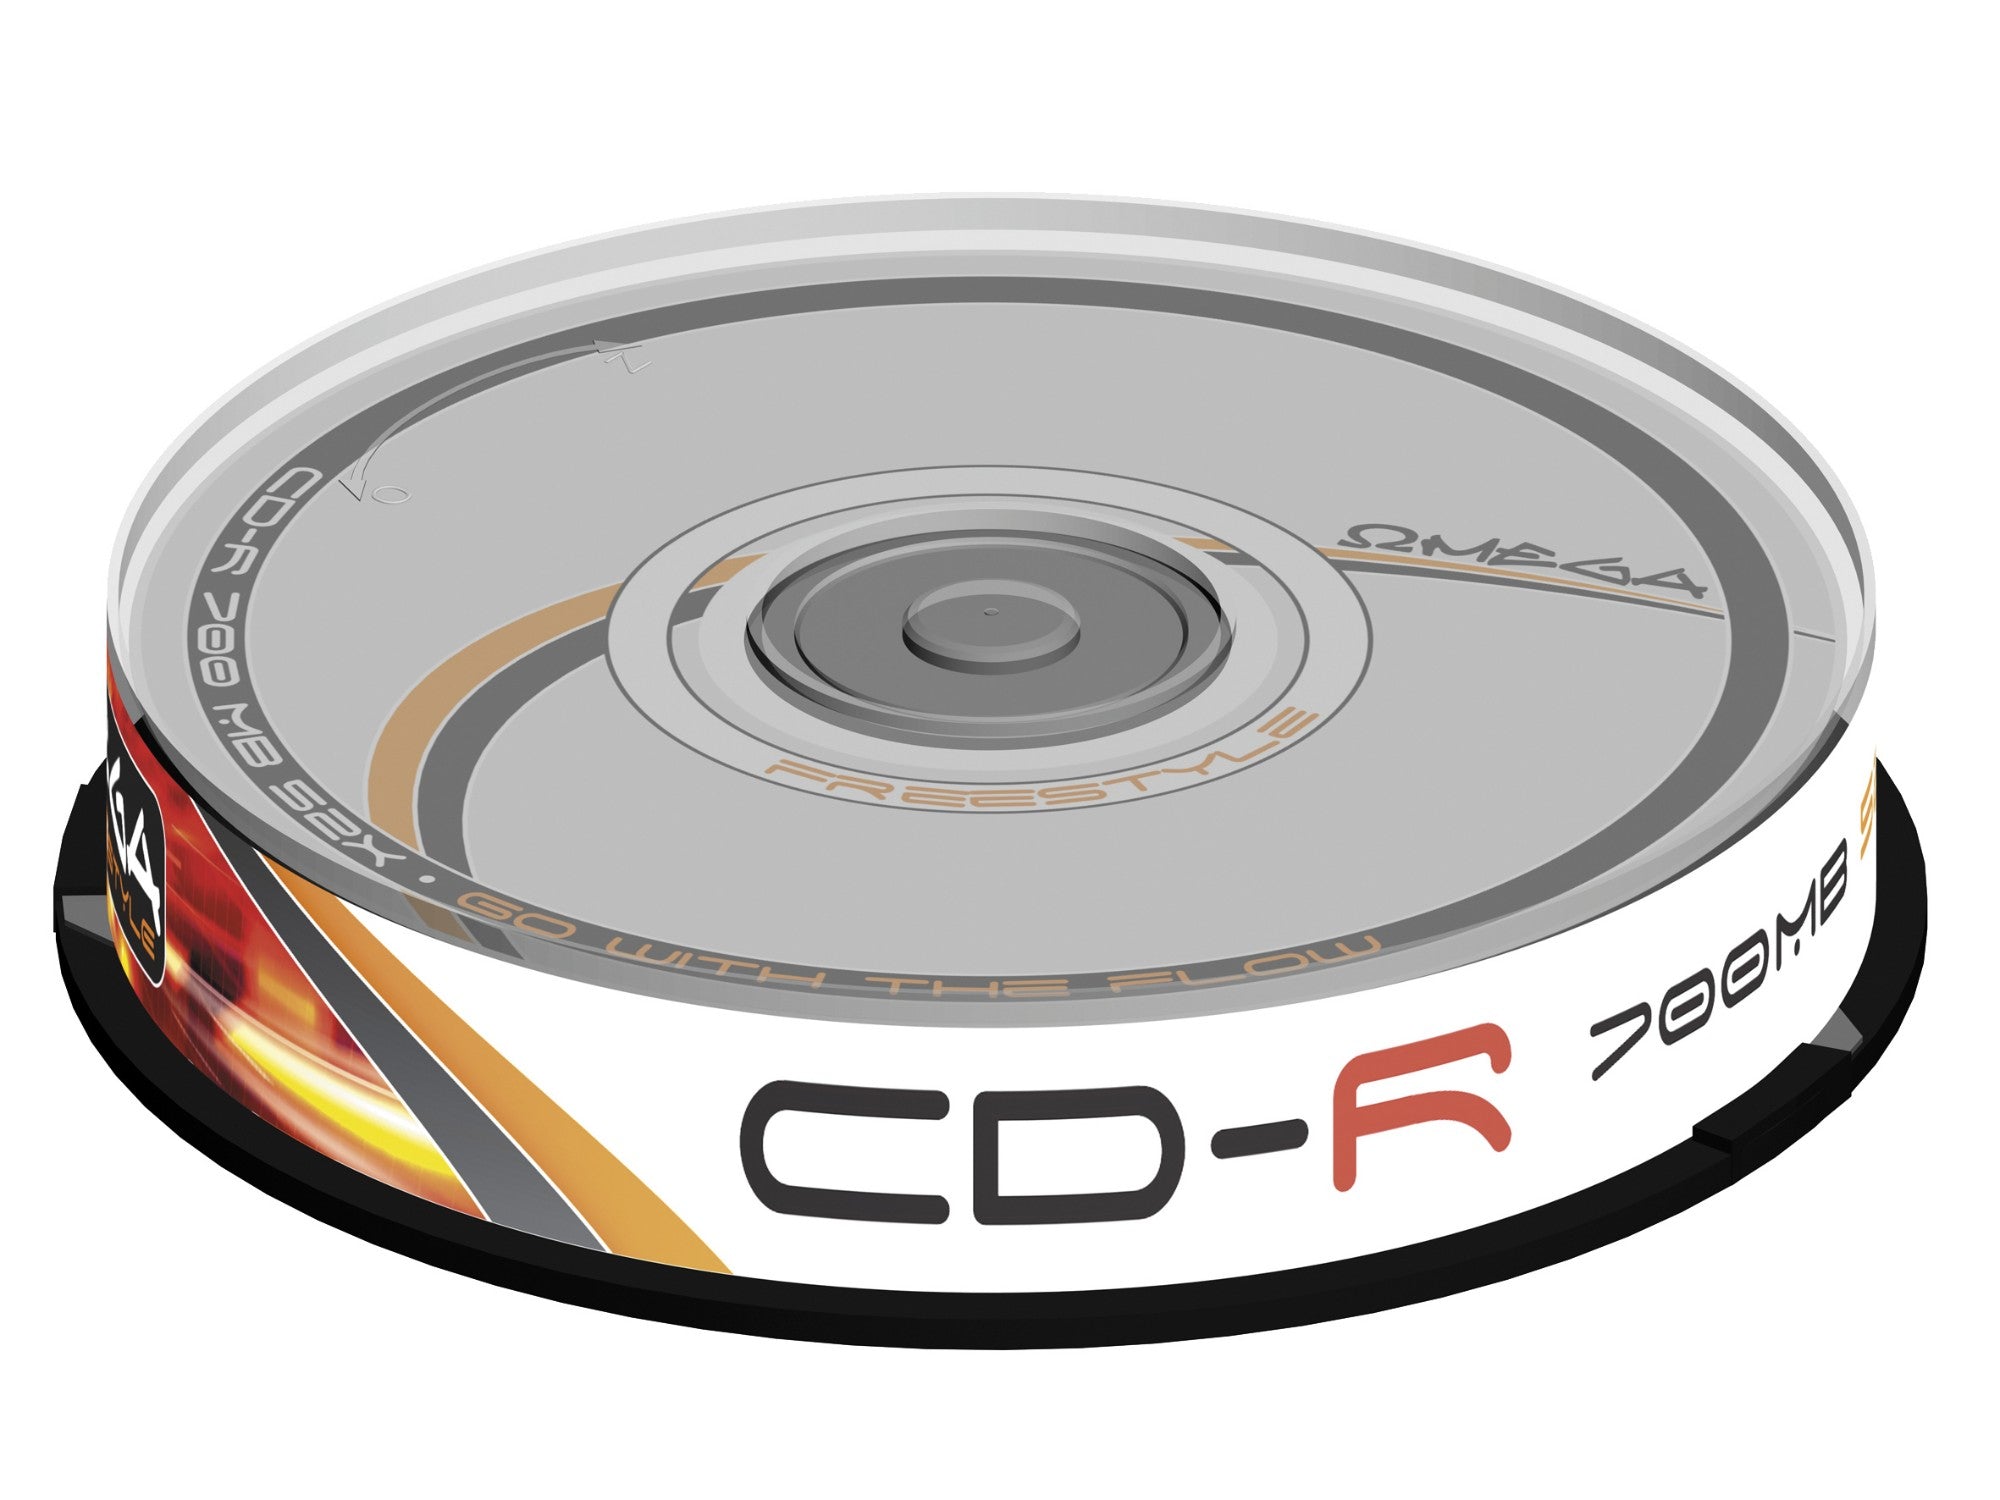 CD-R (x10 pack)